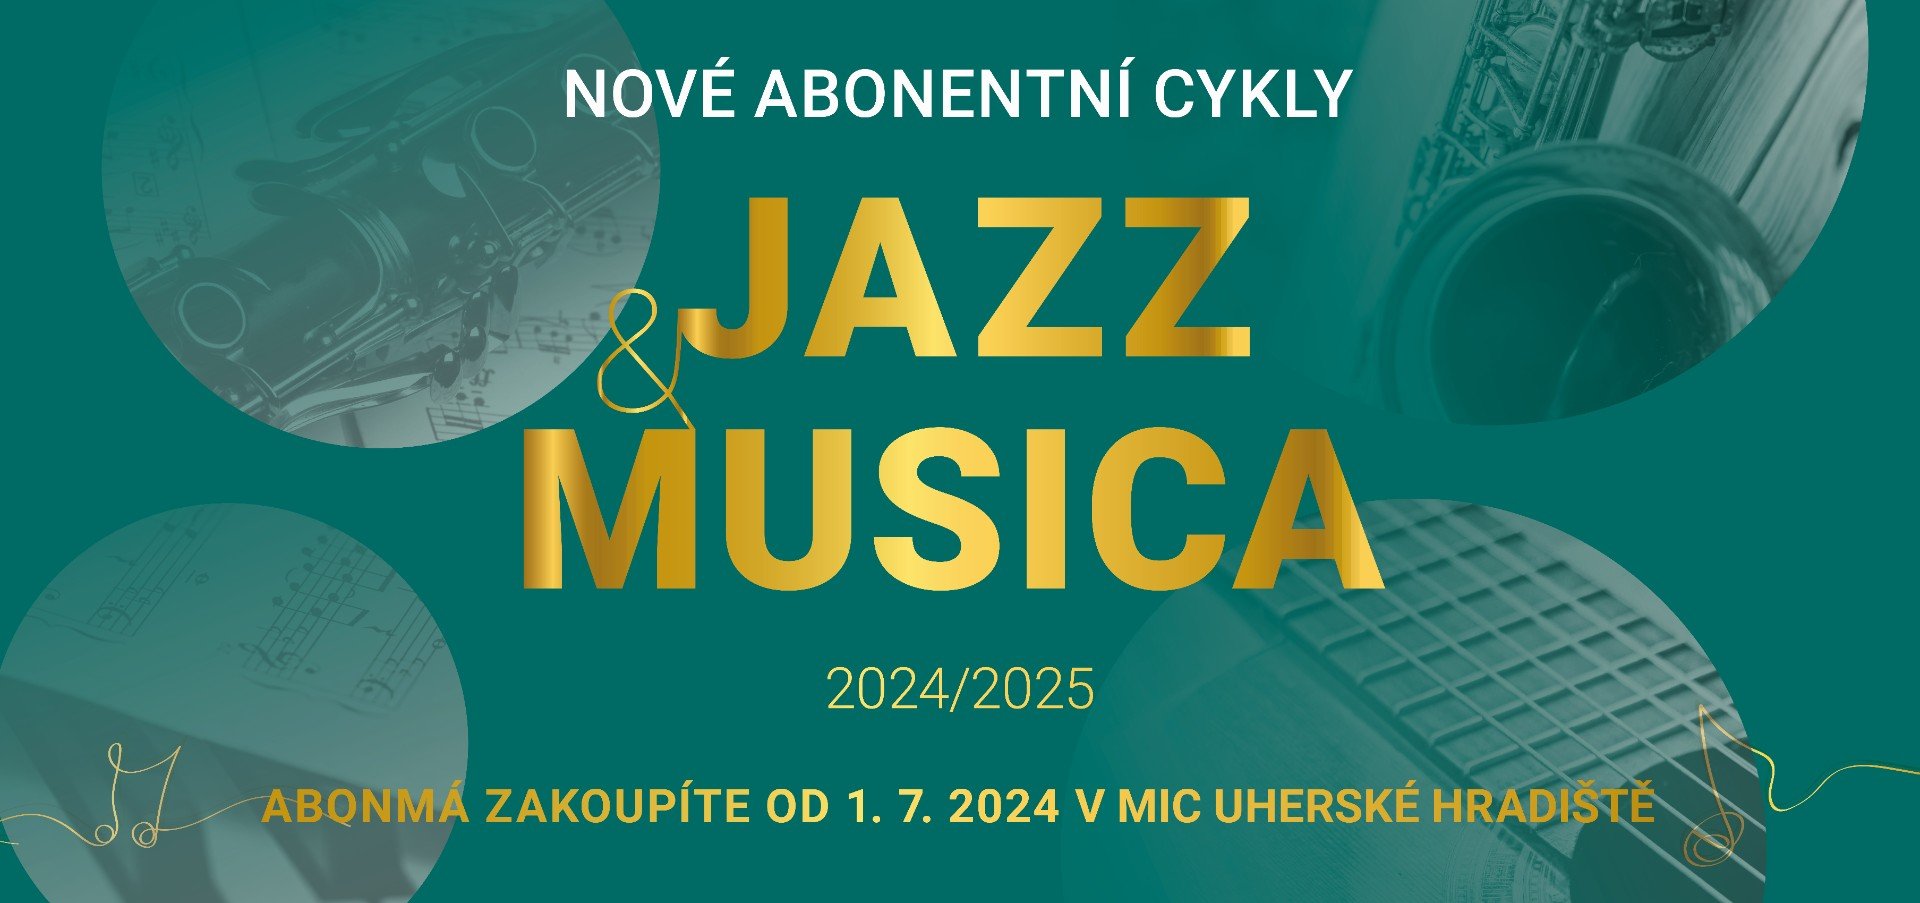 Předprodej abonentních cyklů JAZZ a MUSICA 2024/25 